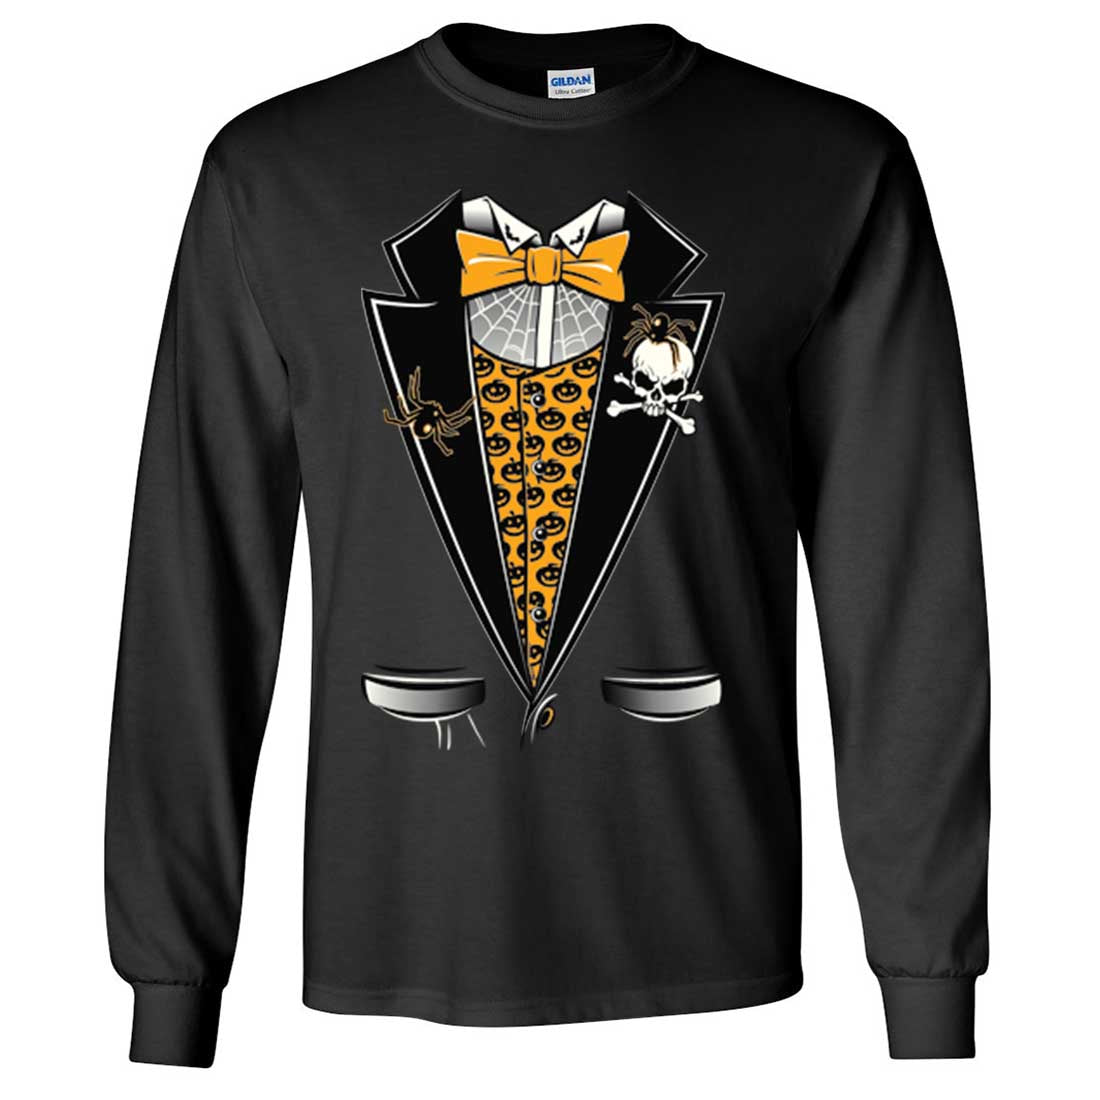 Halloween Penguin T-Shirts & T-Shirt Designs